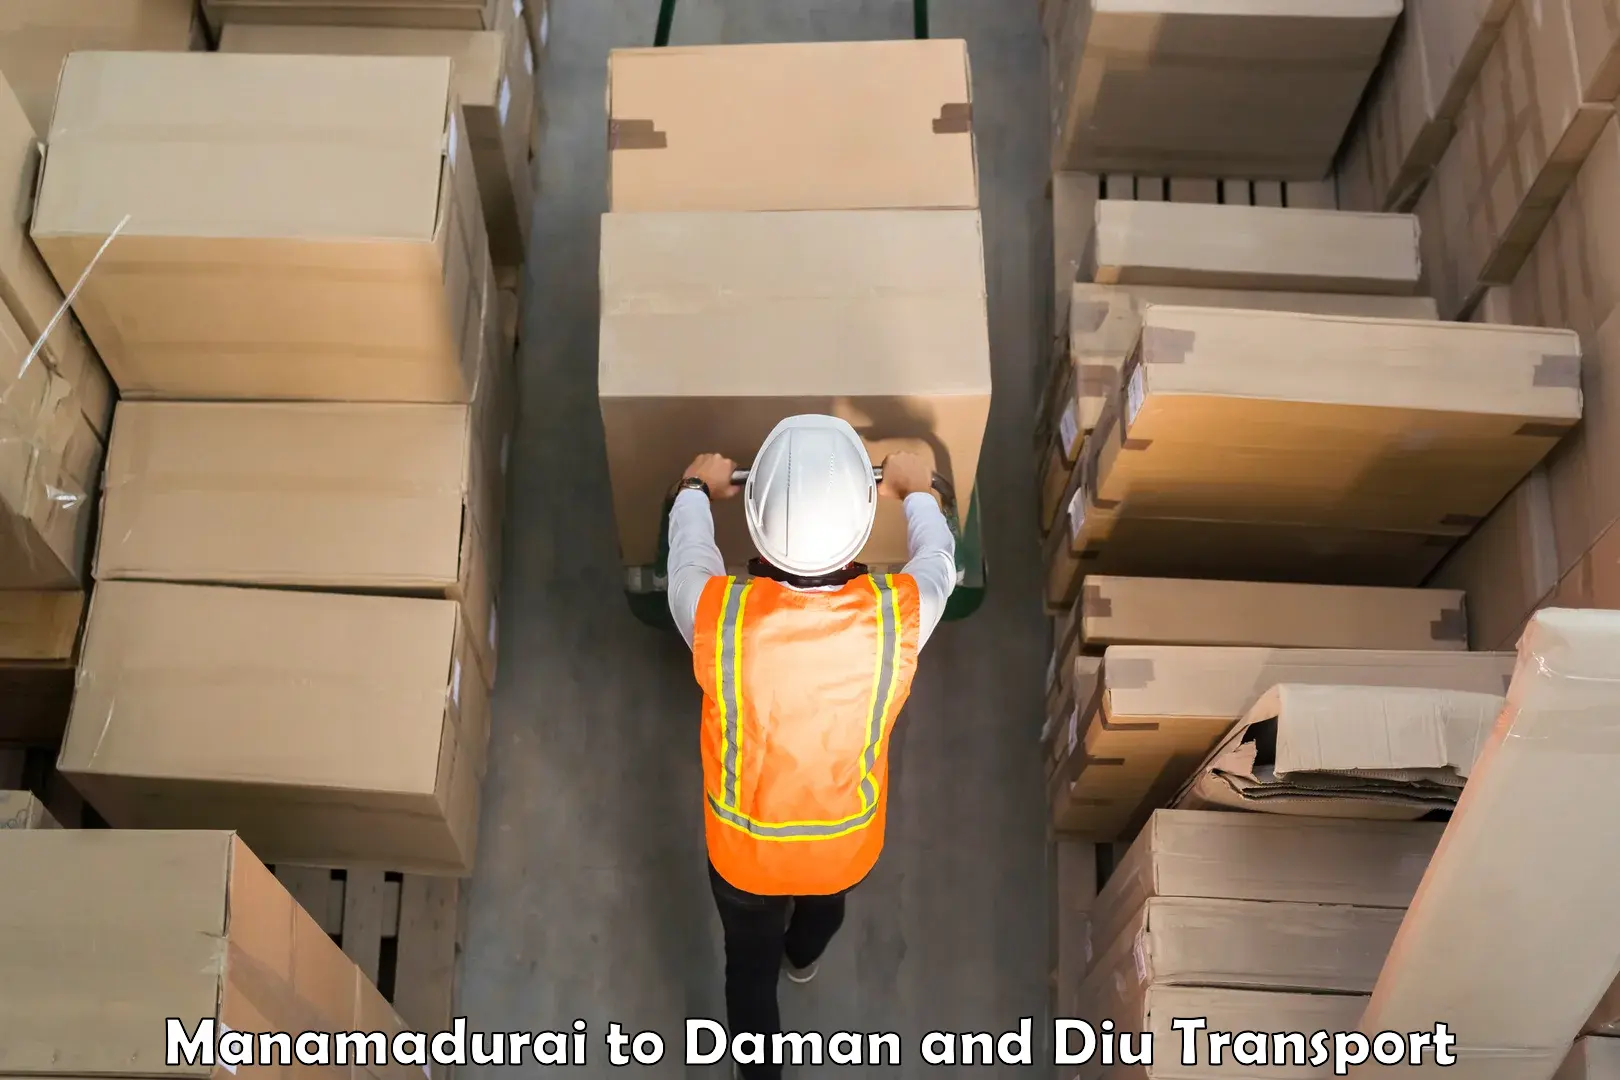 Daily transport service Manamadurai to Daman and Diu